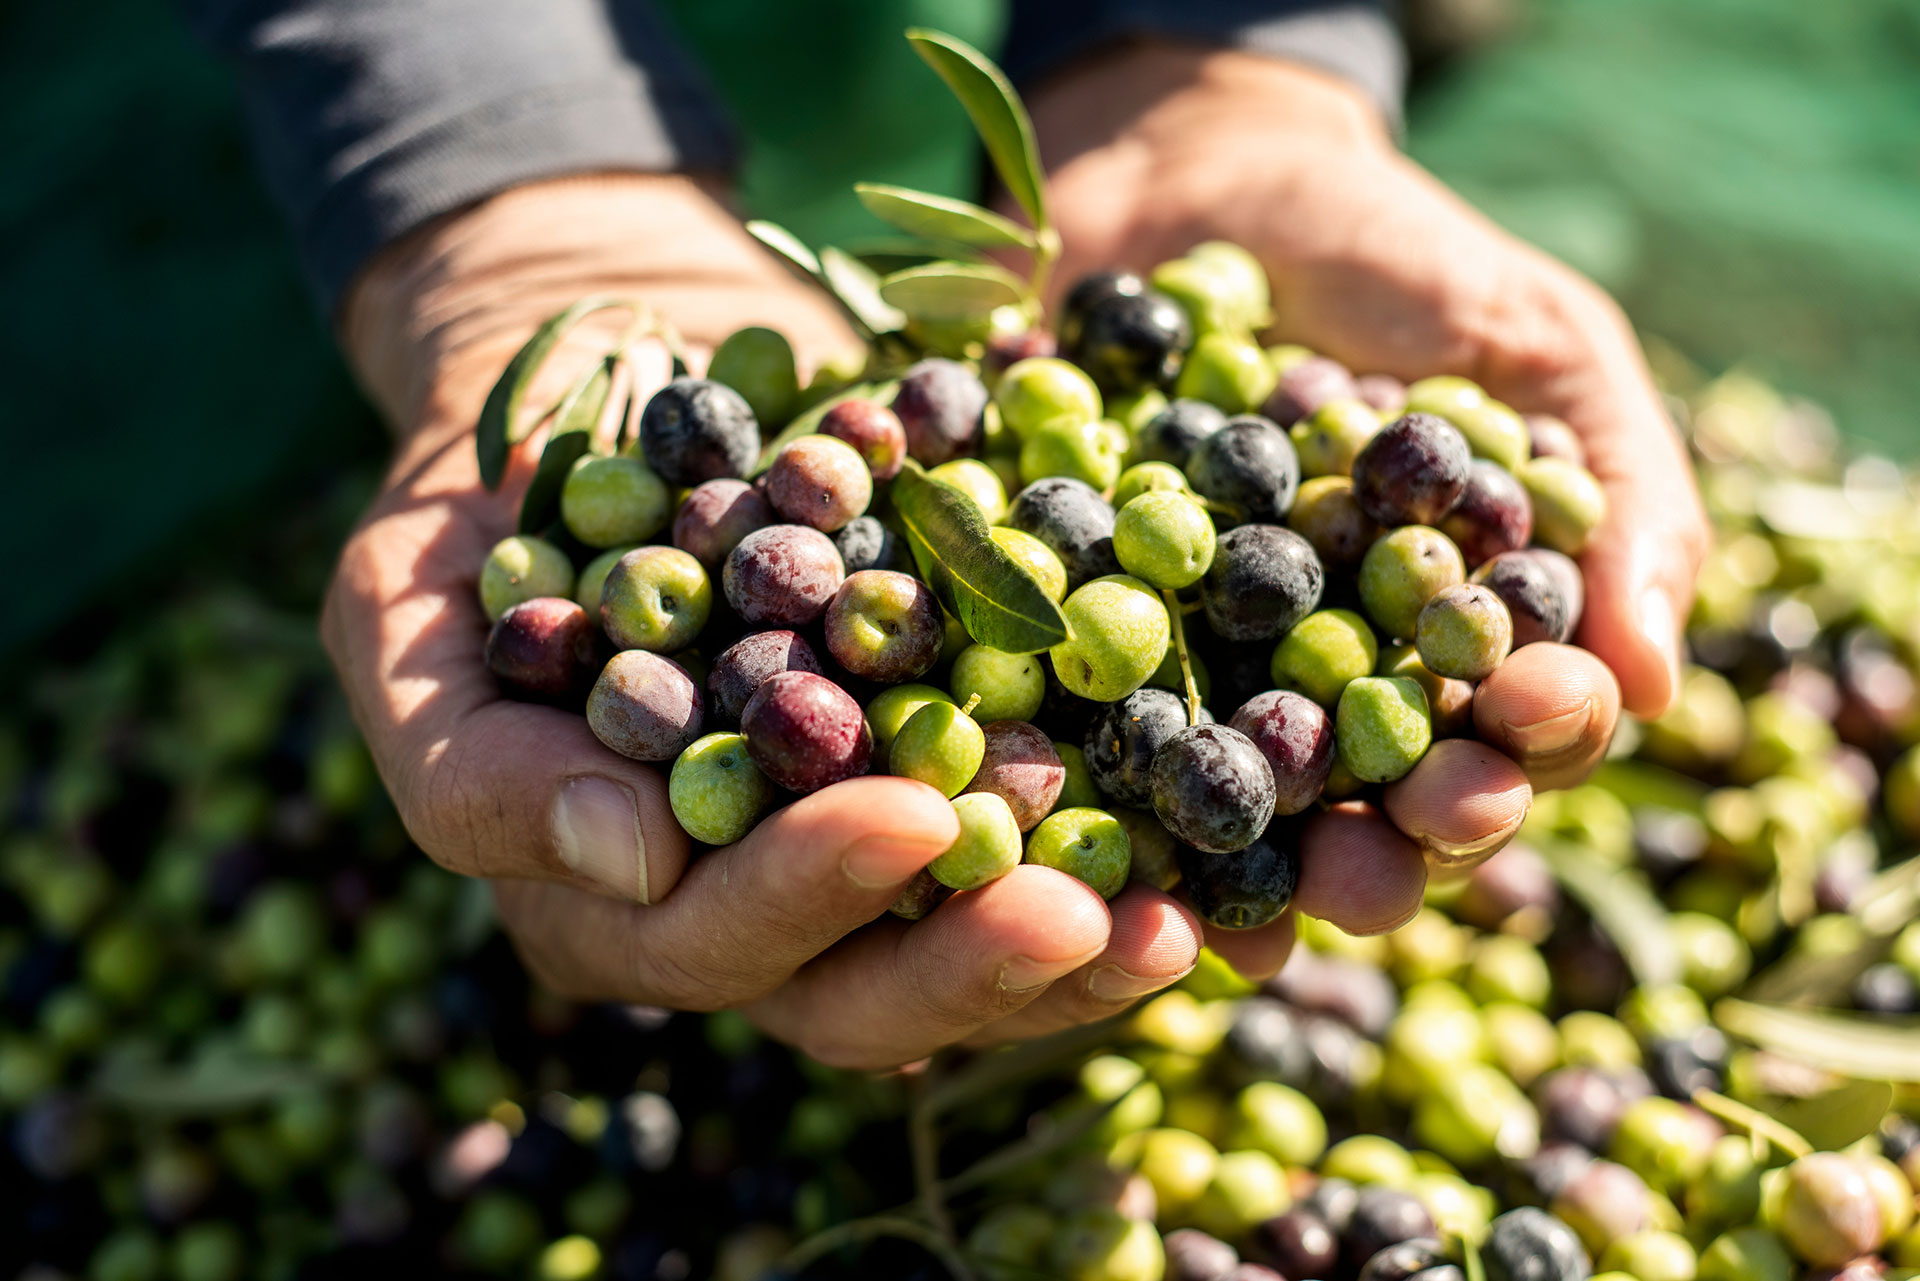 Oliven werden in einer Hand gehalten